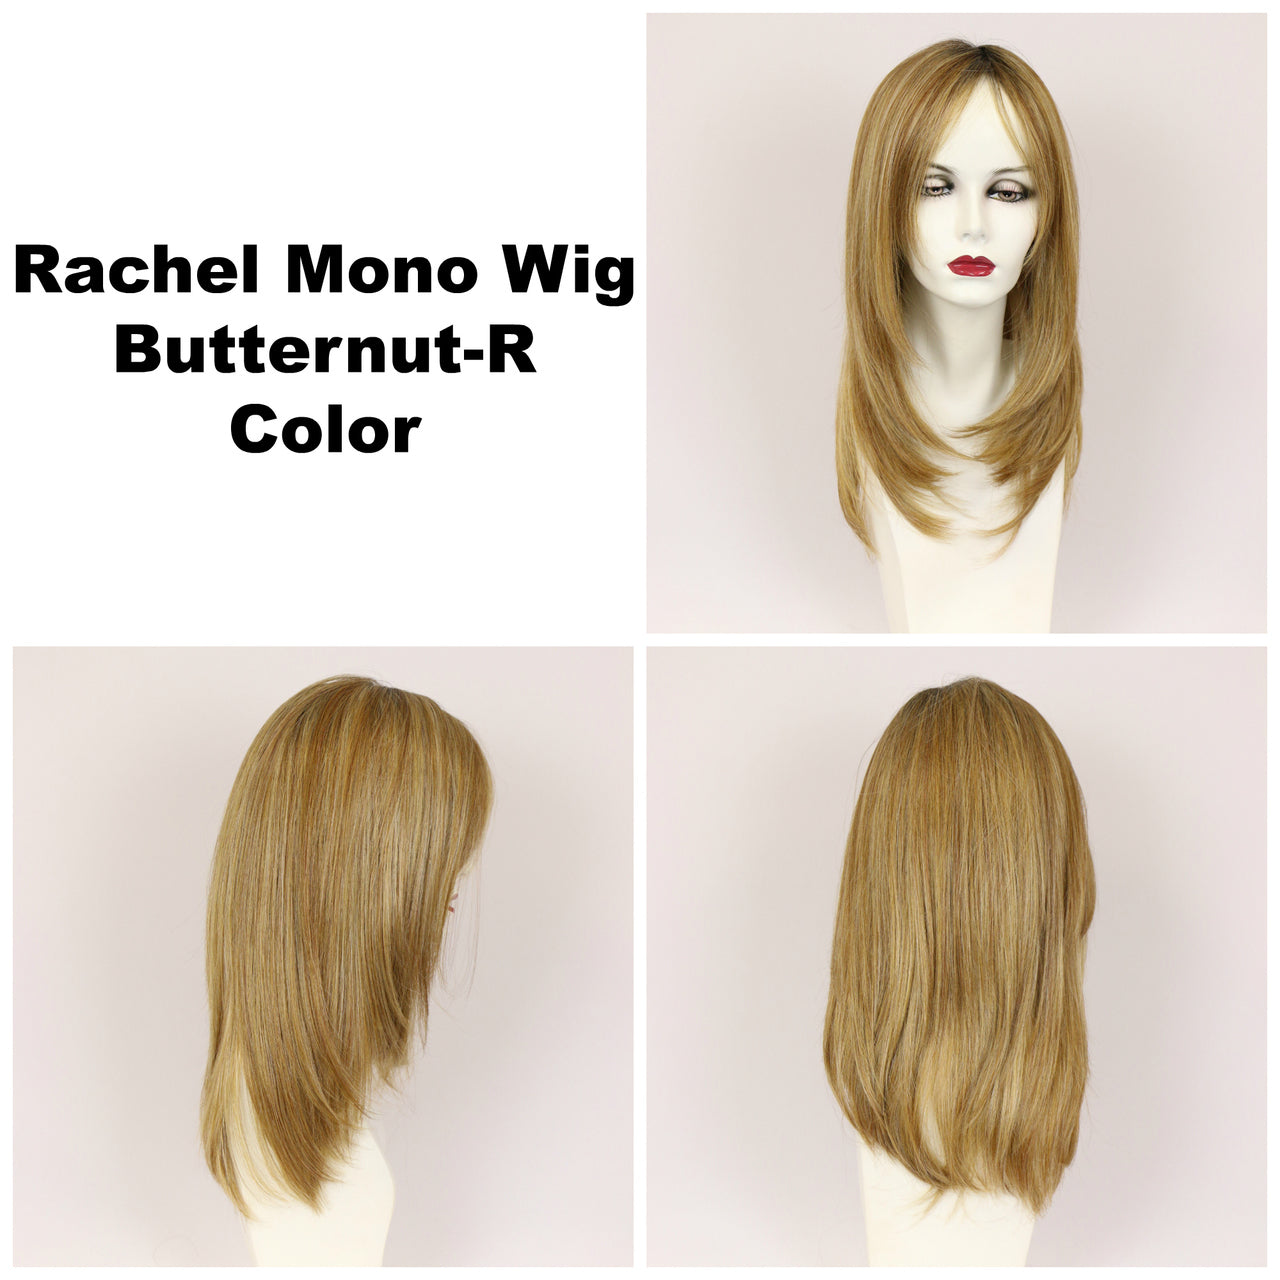 Butternut-R / Rachel Monofilament w/ Roots / Long Wig